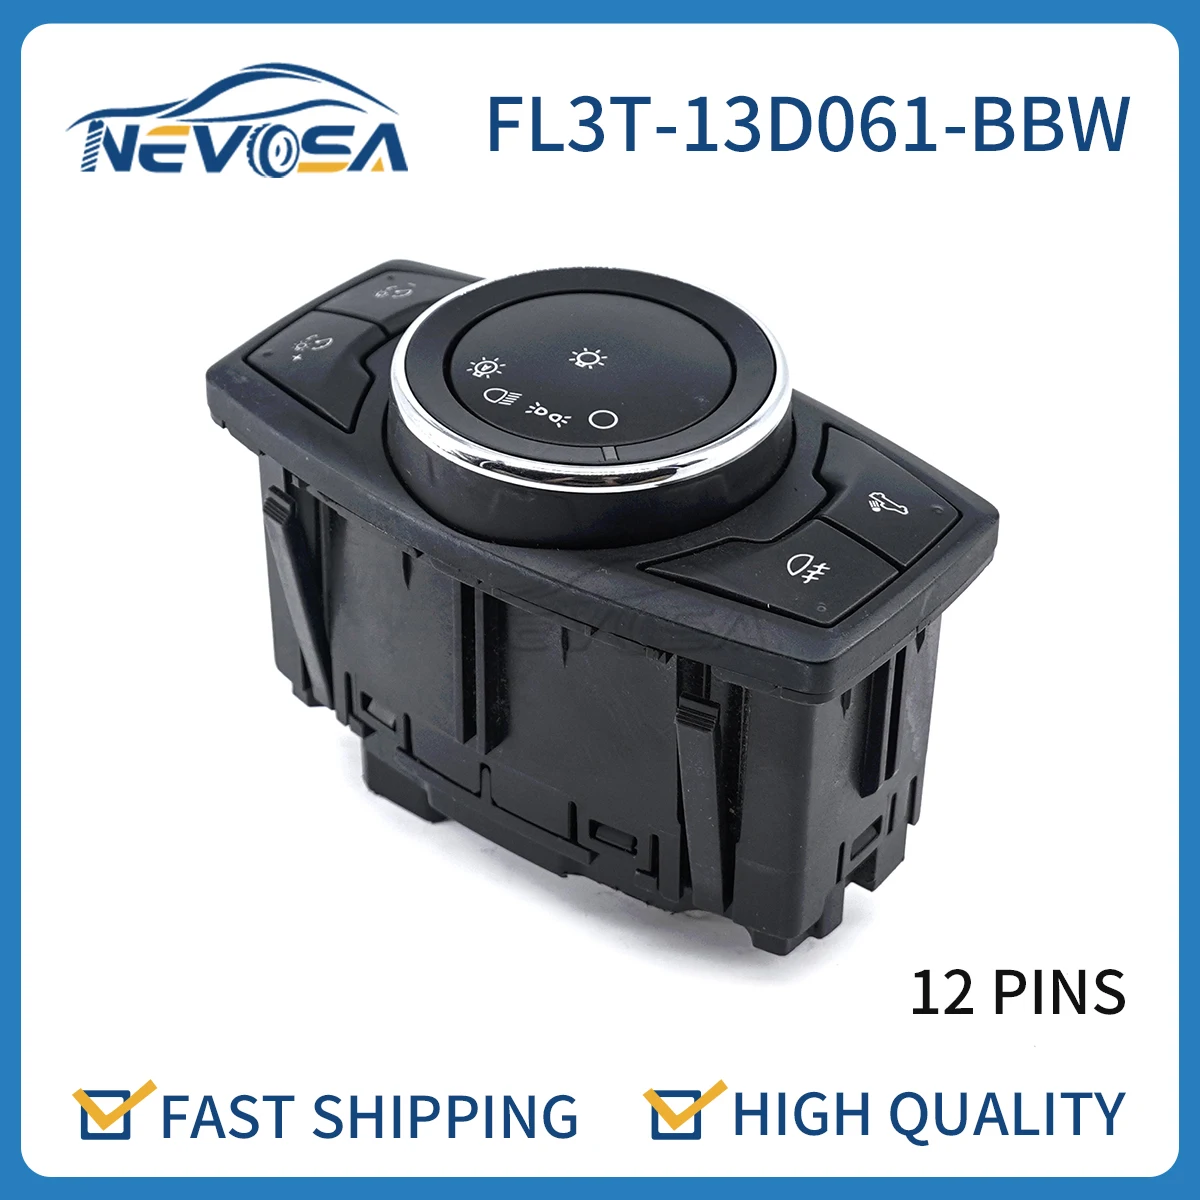 

Nevosa FL3T-13D061-BBW Truck Headlight Hazard Lamp Light Warning Control Switch Knob Panel For 2015-2020 Ford F150 FL3T13D061BBW